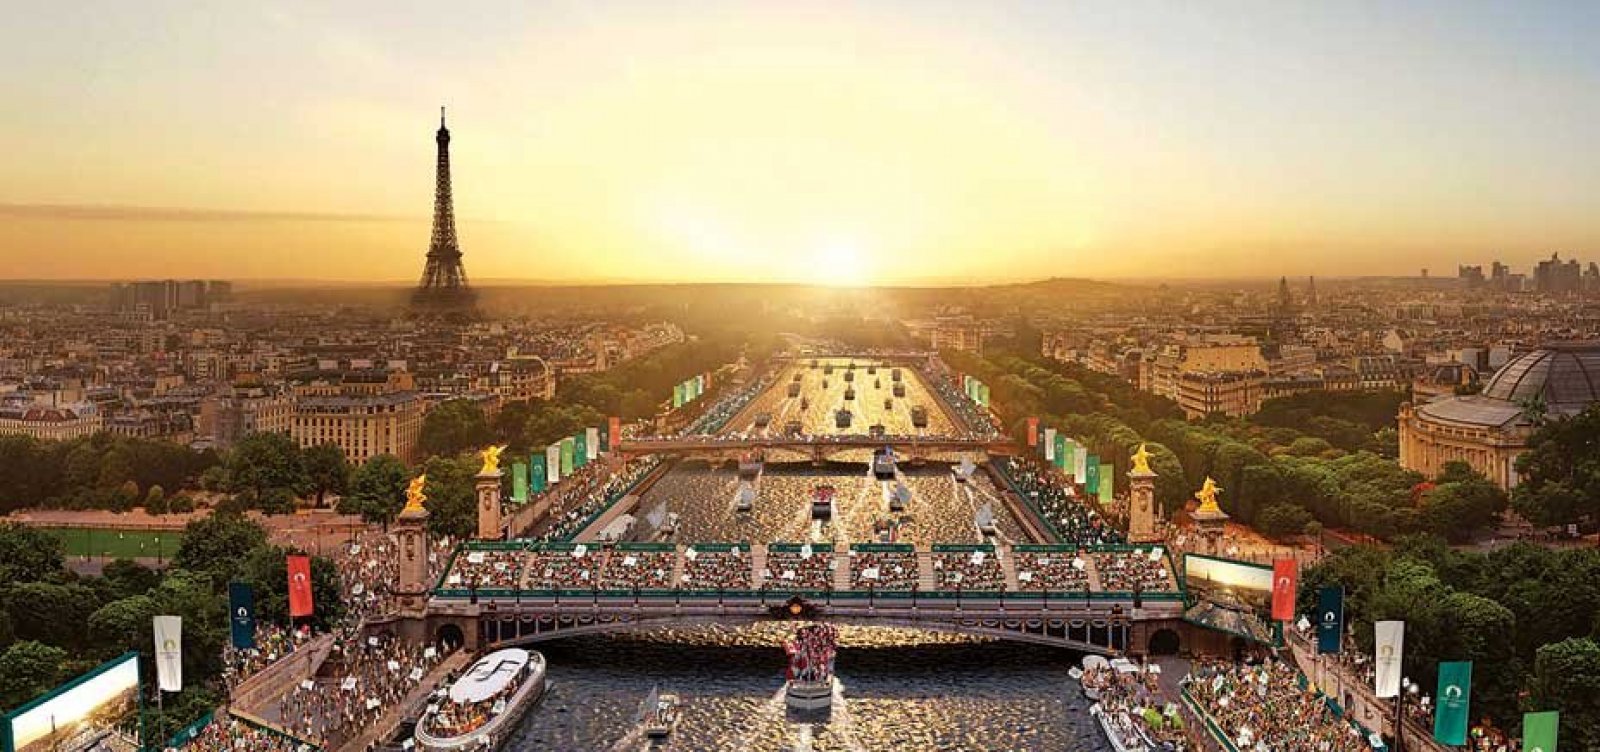 Depois de 100 anos, Paris vai permitir banhos no rio Sena